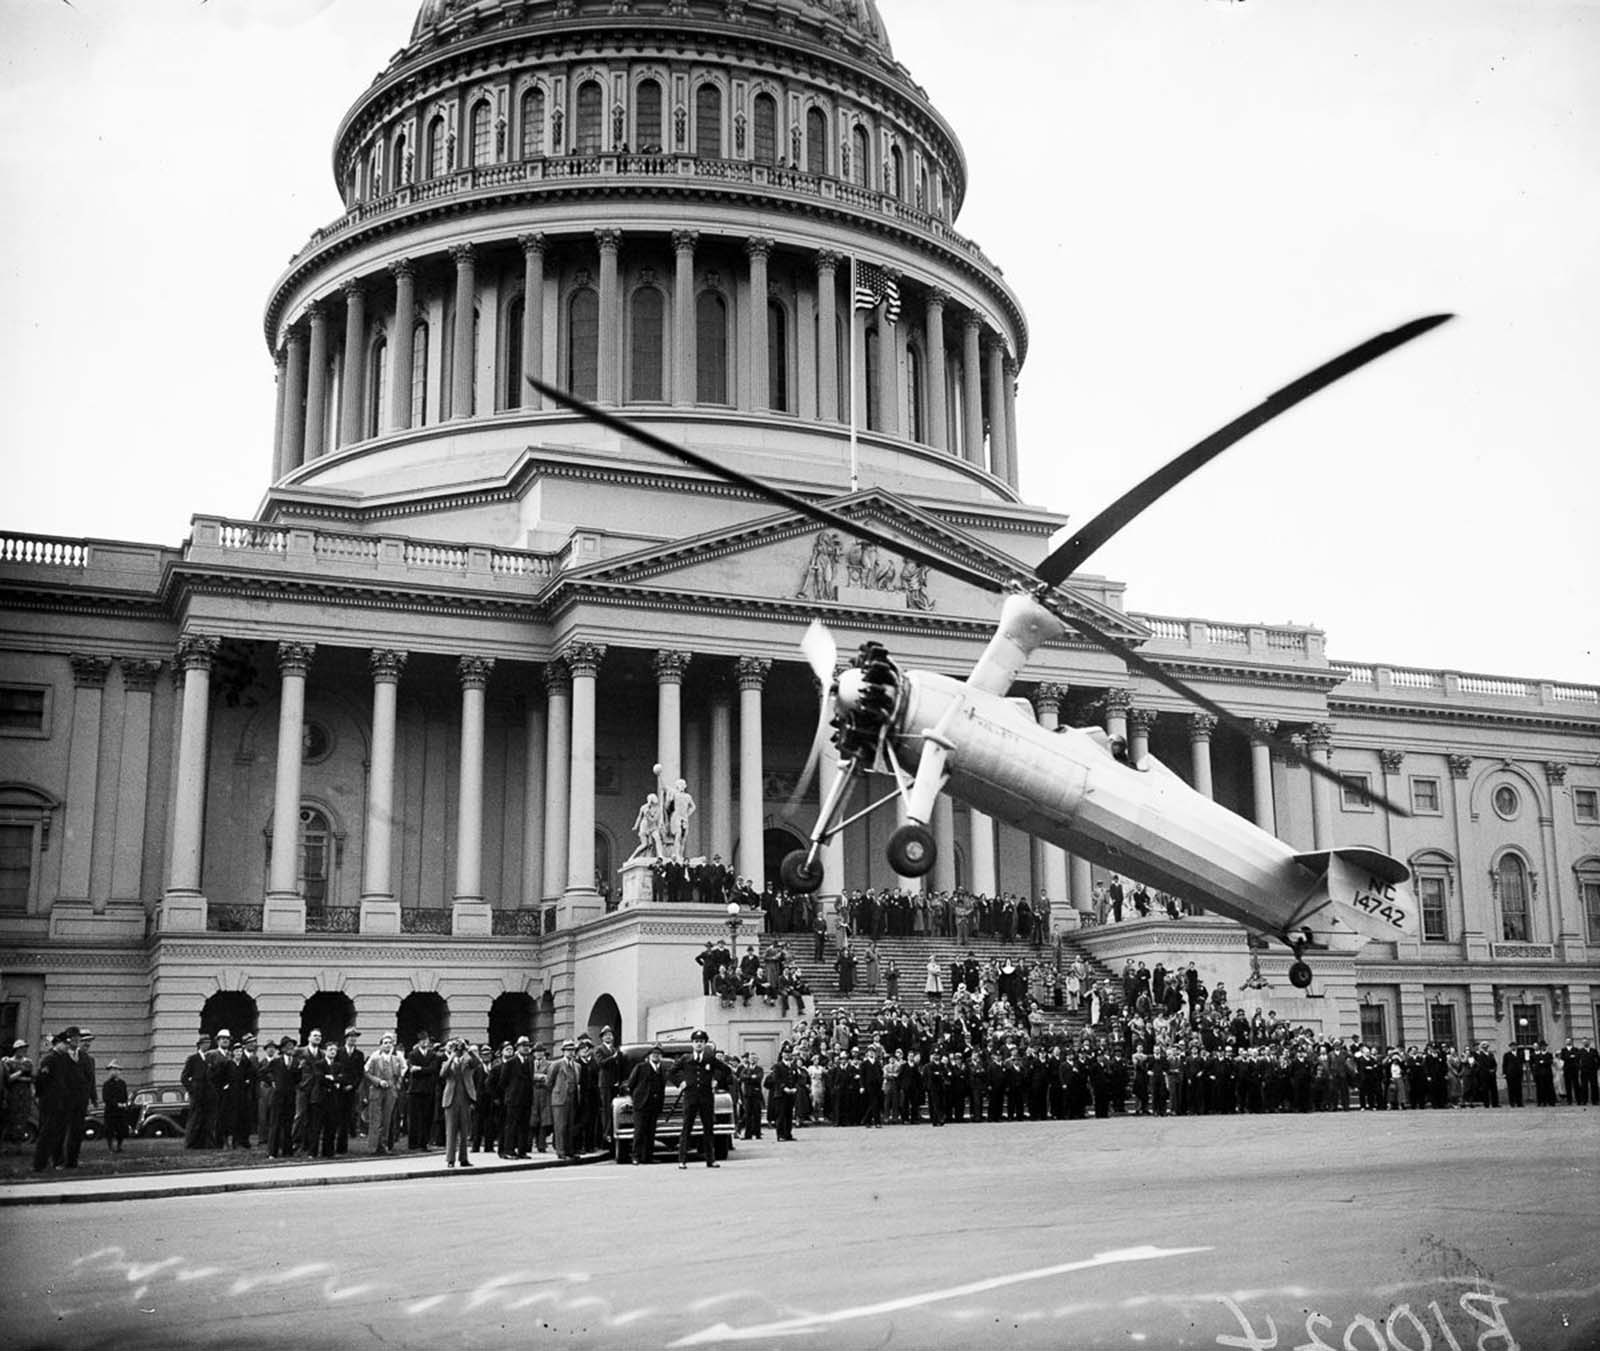 Autogyro: L'histoire des premiers hybrides avion-hélicoptère, 1925-1940